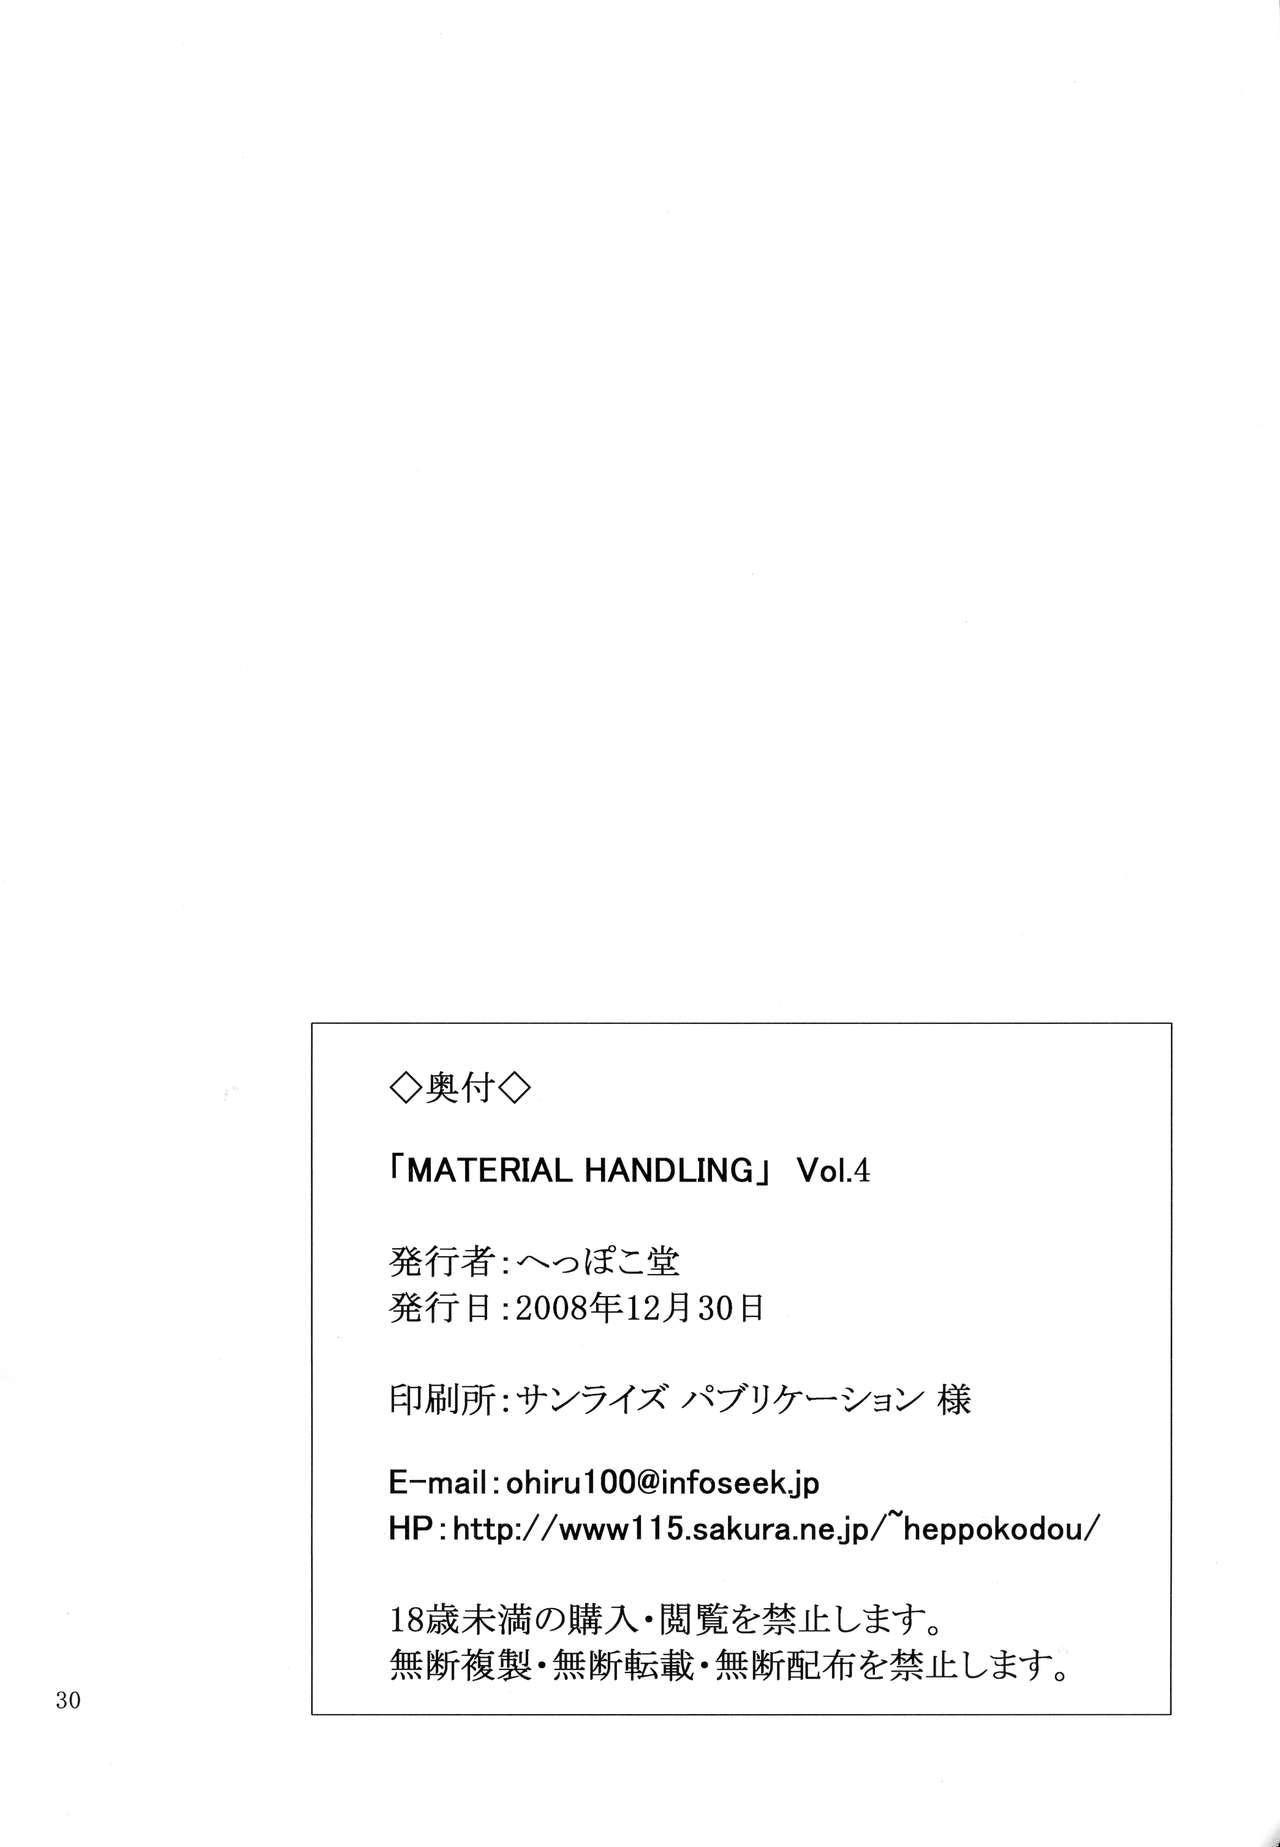 Material Handling Vol.4 29